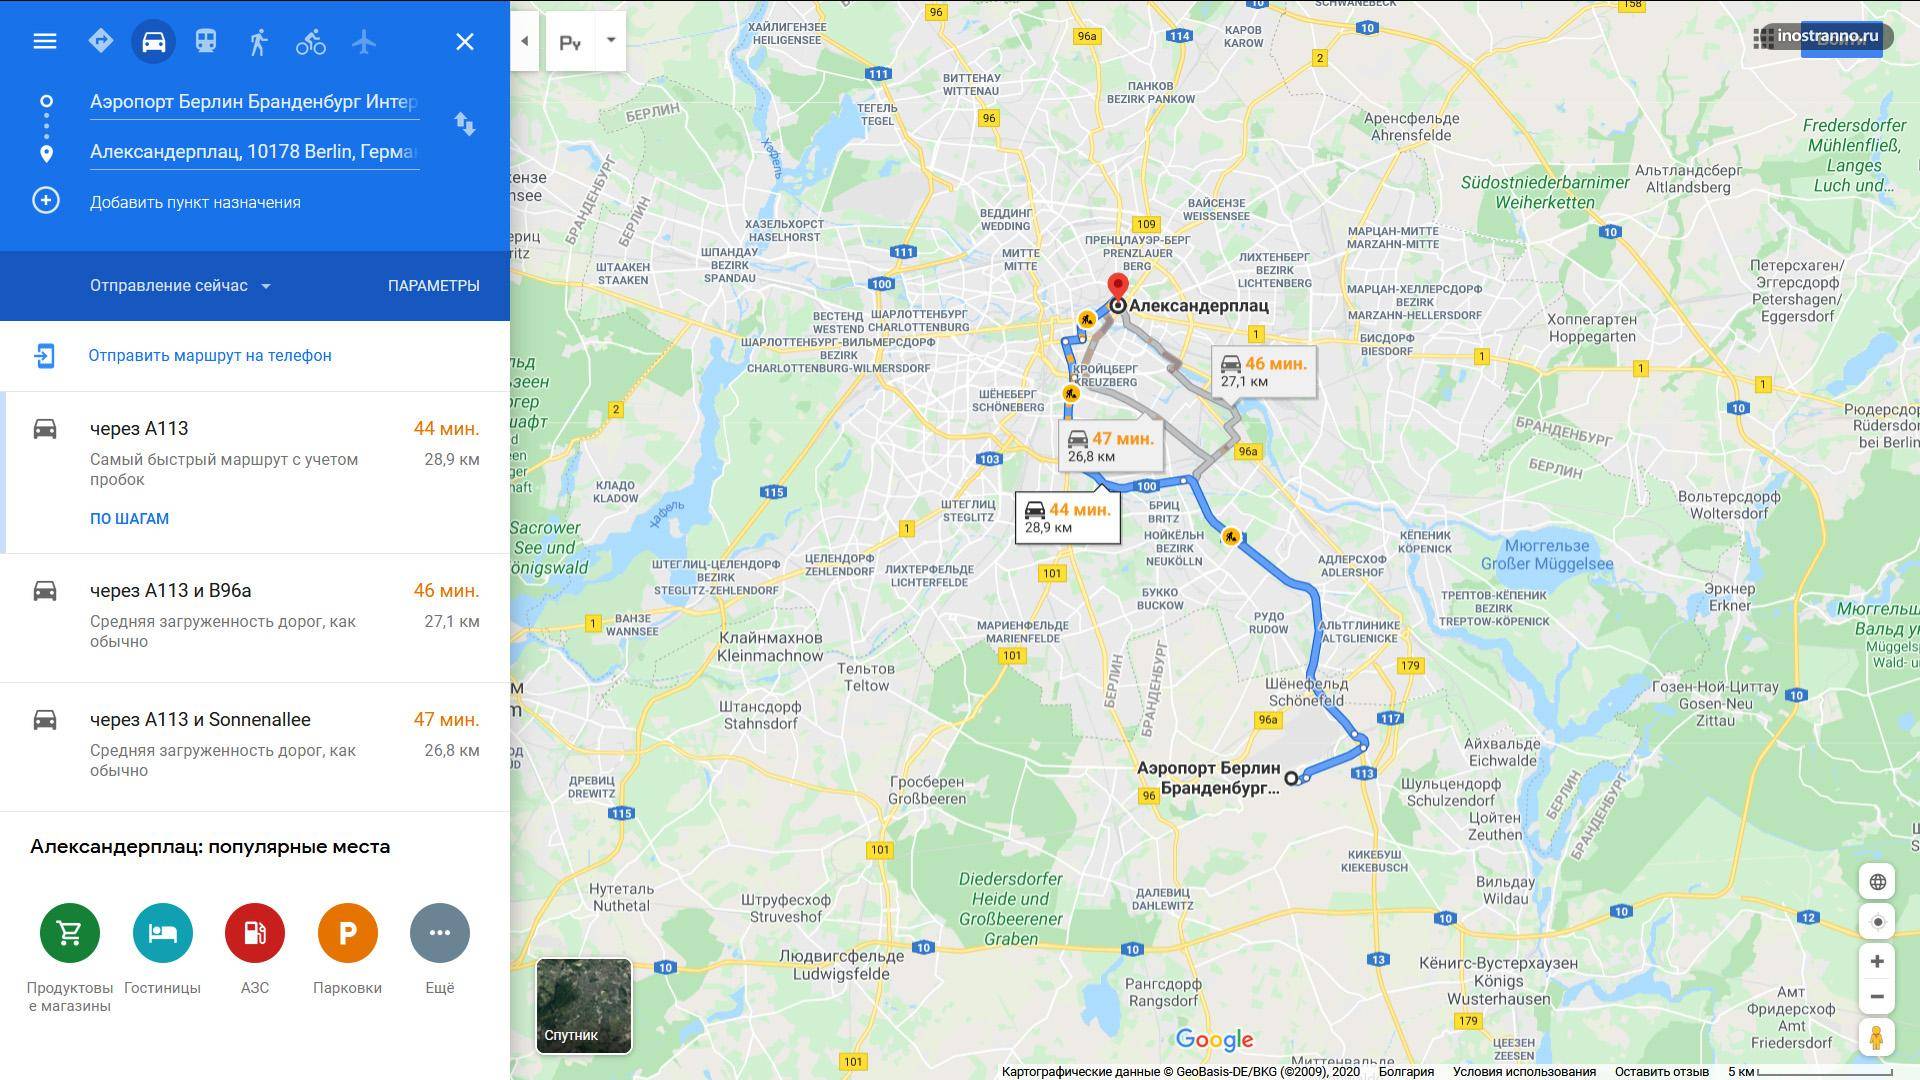 Как закольцевать маршрут копенгаген-берлин? - советы, вопросы и ответы путешественникам на трипстере